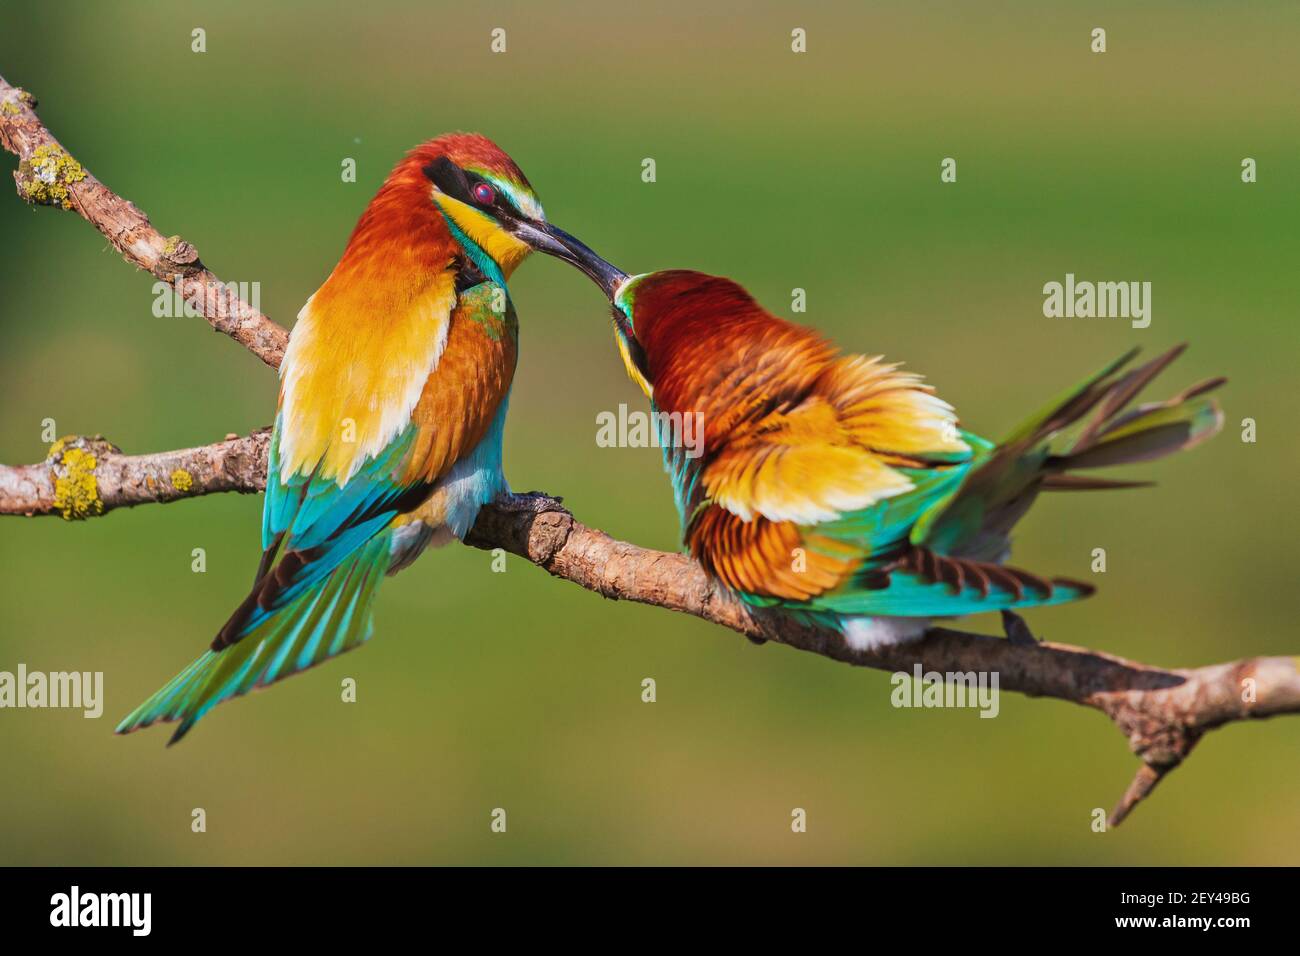 primavera pájaros coloridos besando en la rama Foto de stock